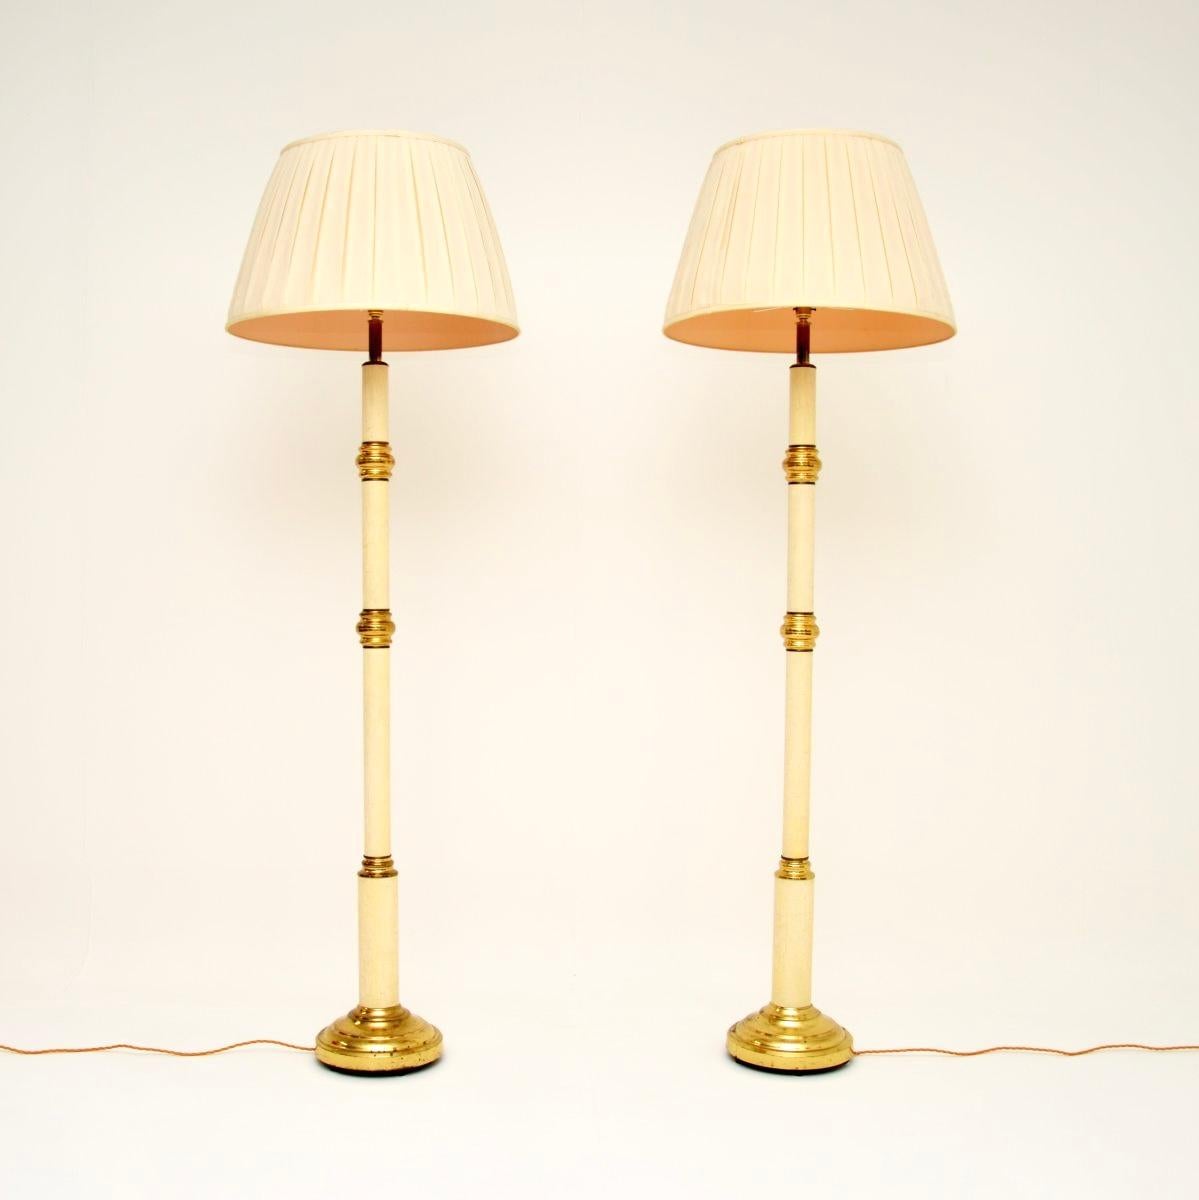 Ein absolut großartiges Paar Vintage-Stehlampen von Clive Rowland. Sie wurden in England hergestellt und stammen etwa aus den 1970er Jahren.

Die Qualität ist hervorragend, sie sind aus einer Kombination von massivem Messing und emailliertem Metall